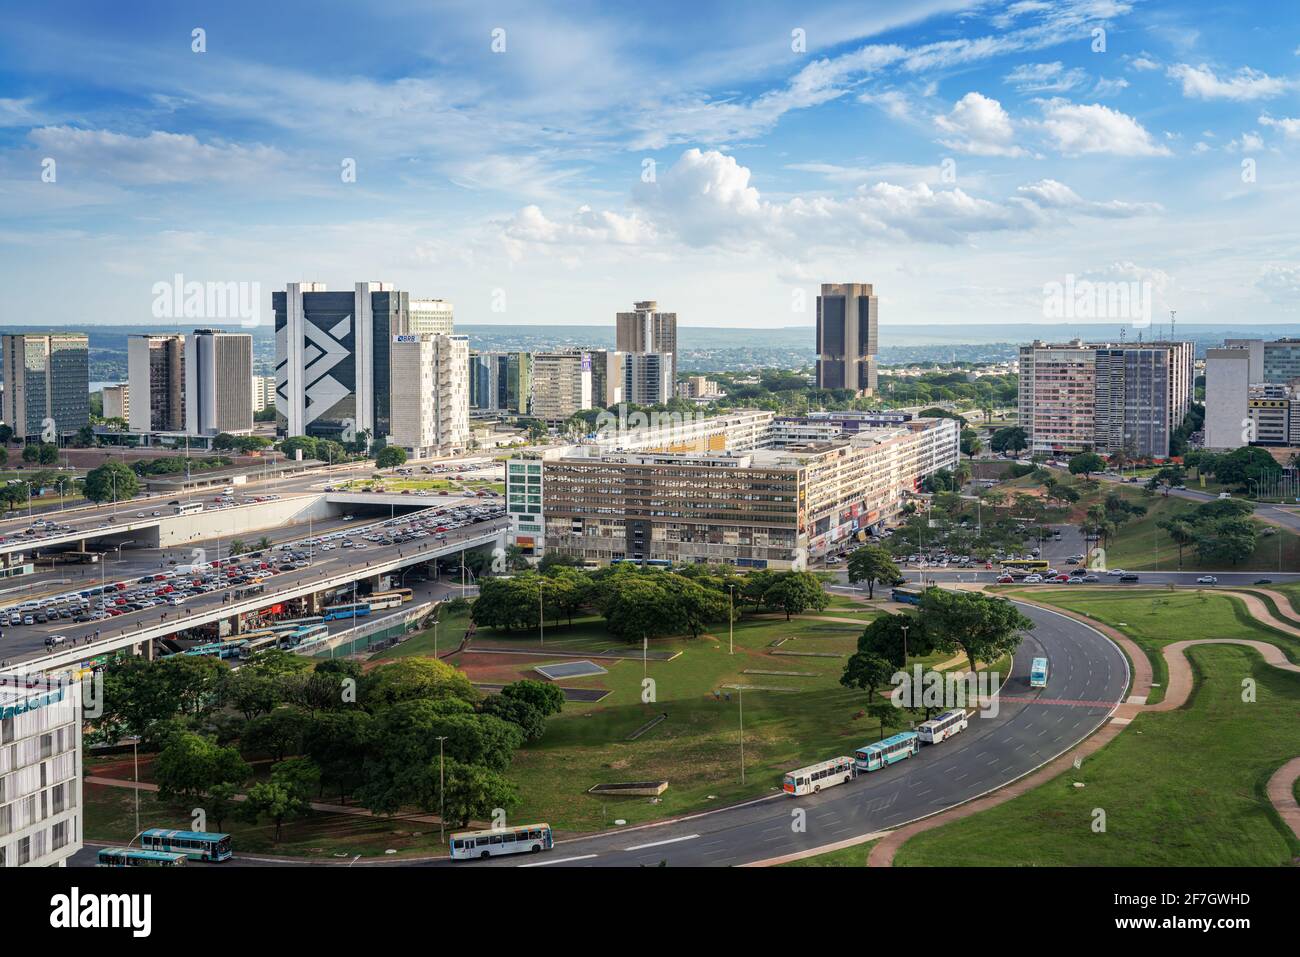 Vue aérienne de Brasilia et du secteur bancaire du Sud - Brasilia, District fédéral, Brésil Banque D'Images